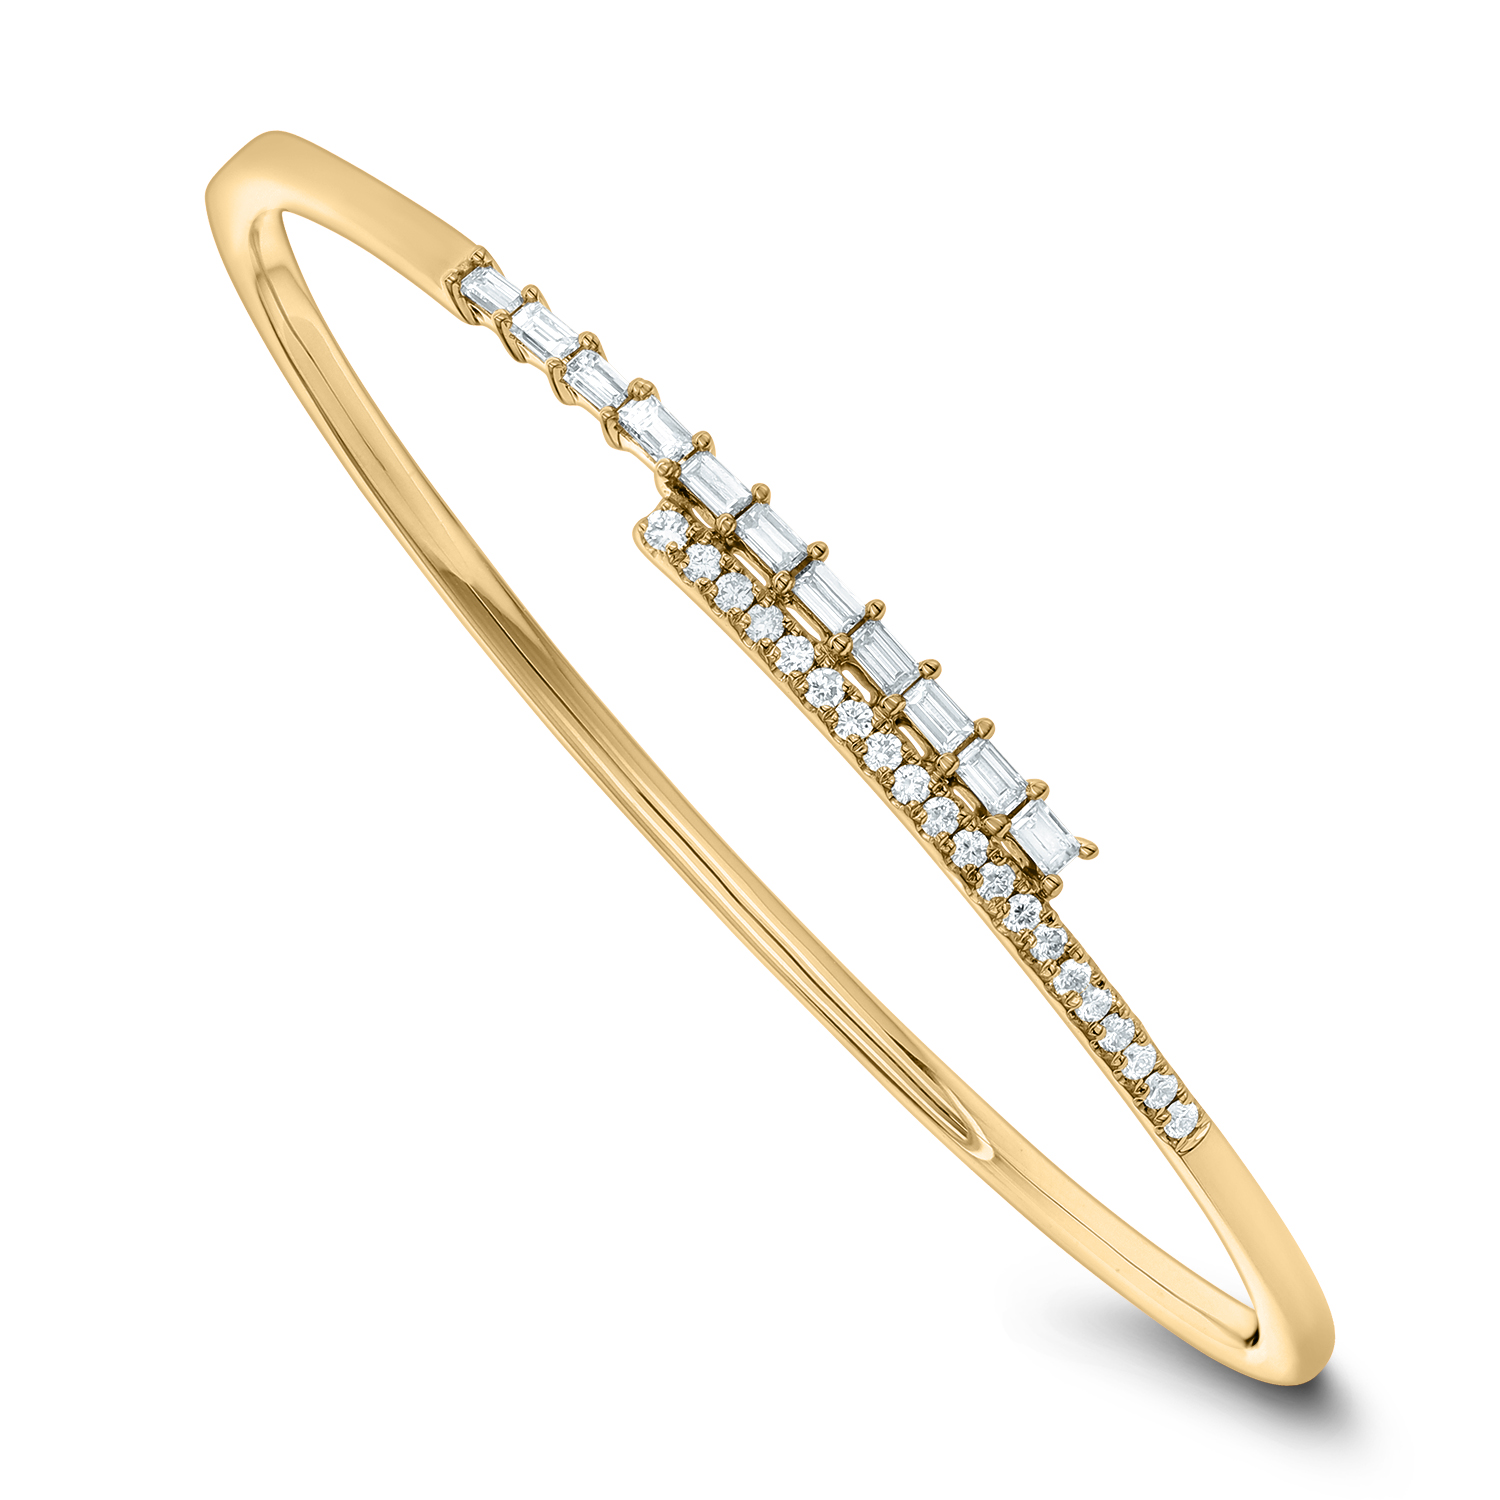 An 18k Yellow Gold Diamond Bangle Bracelet